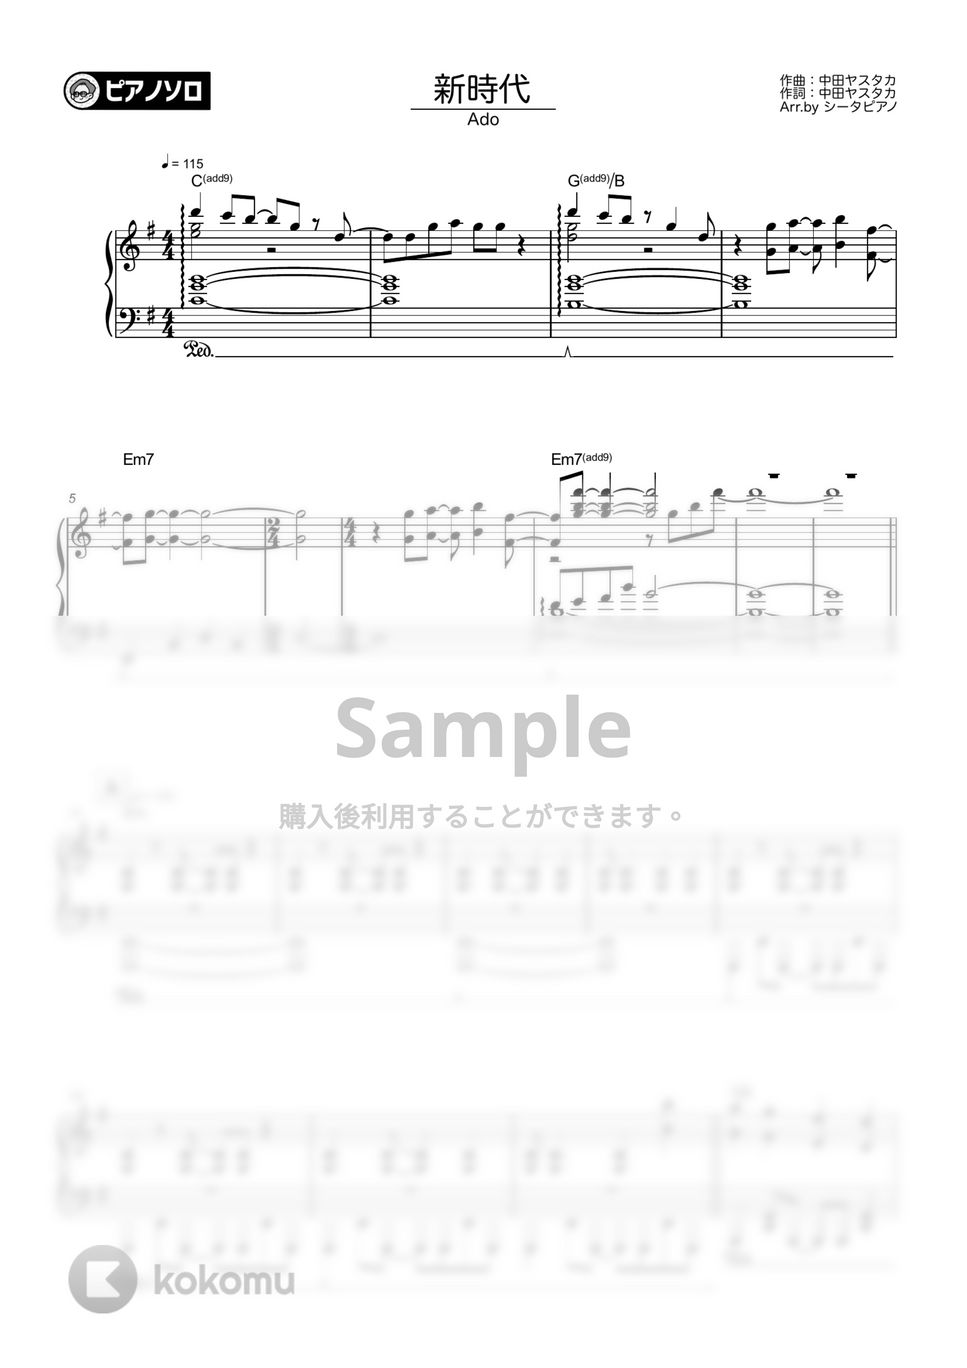 Ado - 新時代 by シータピアノ